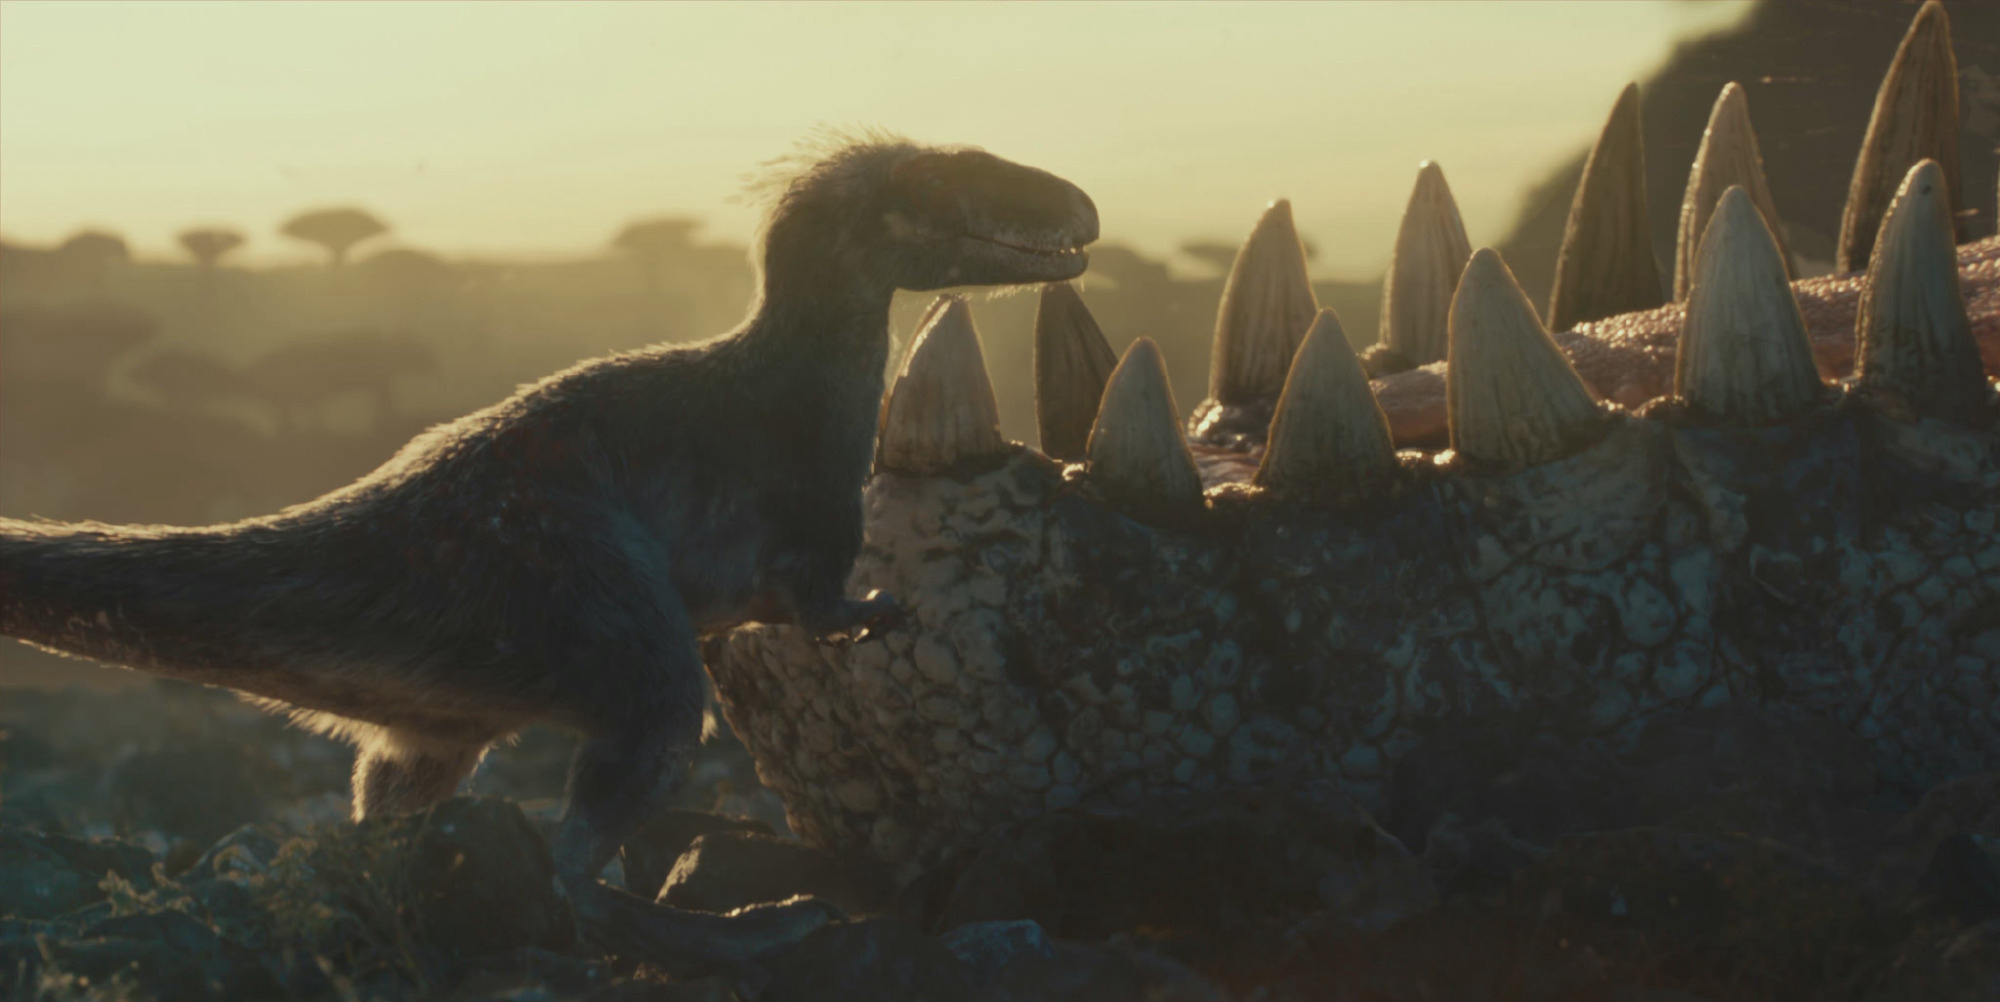 上映倒计时一周年 《侏罗纪世界3:统治》曝新剧照